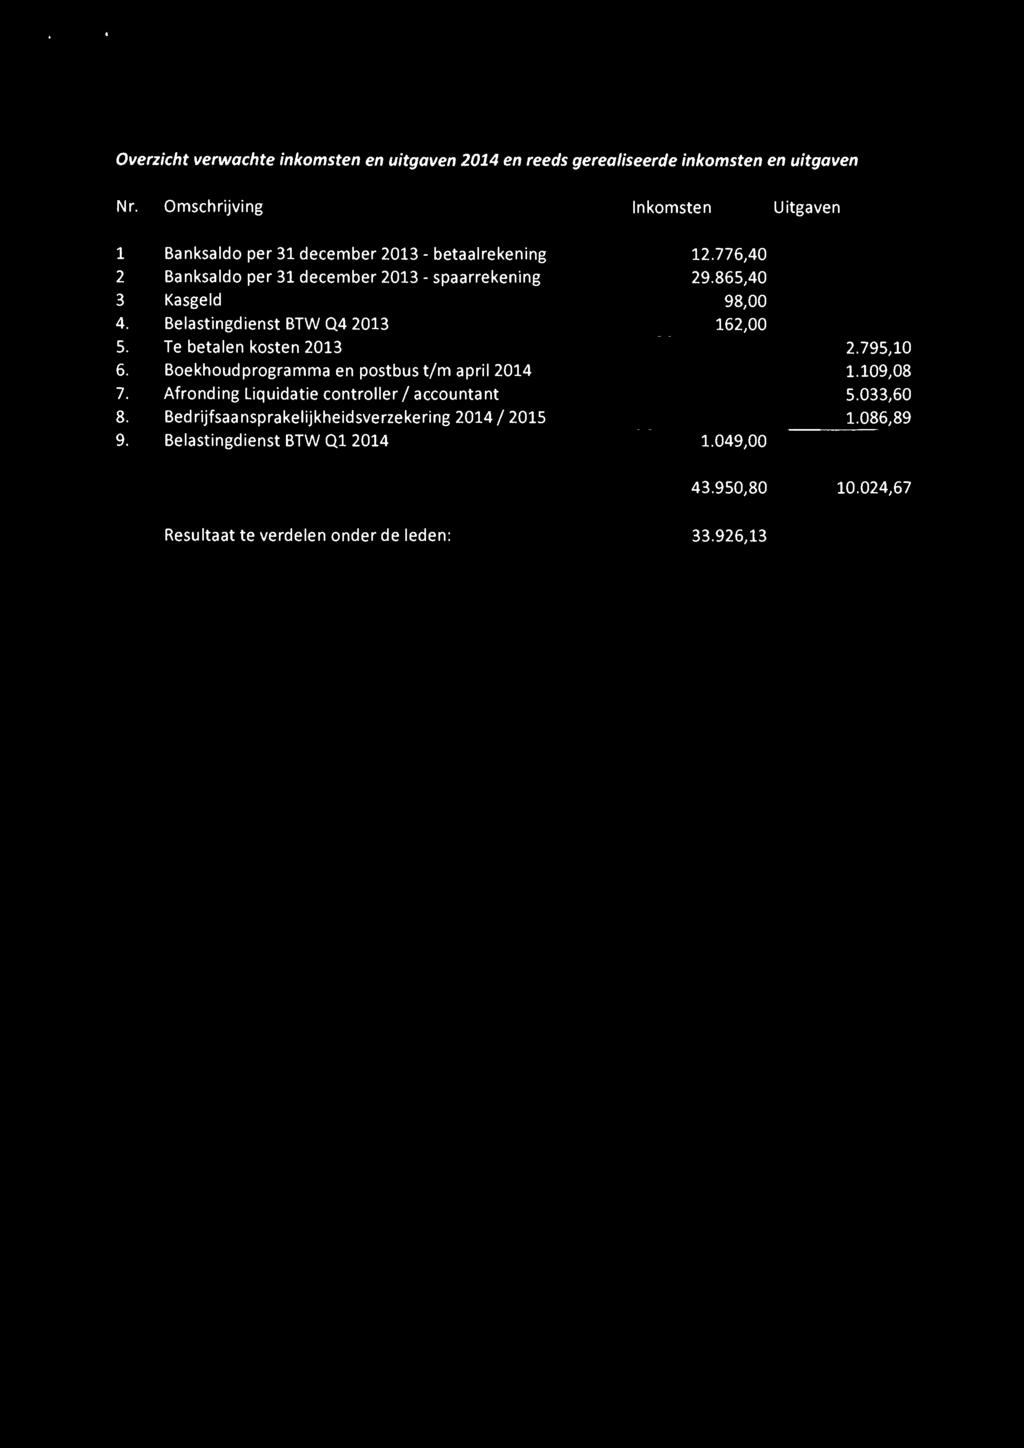 865,40 3 Kasgeld 98,00 4. Belastingdienst BTW Q4 2013 162,00 5. Te betalen kosten 2013 2.795,10 6. Boekhoudprogramma en postbus t/m april2014 1.109,08 7.